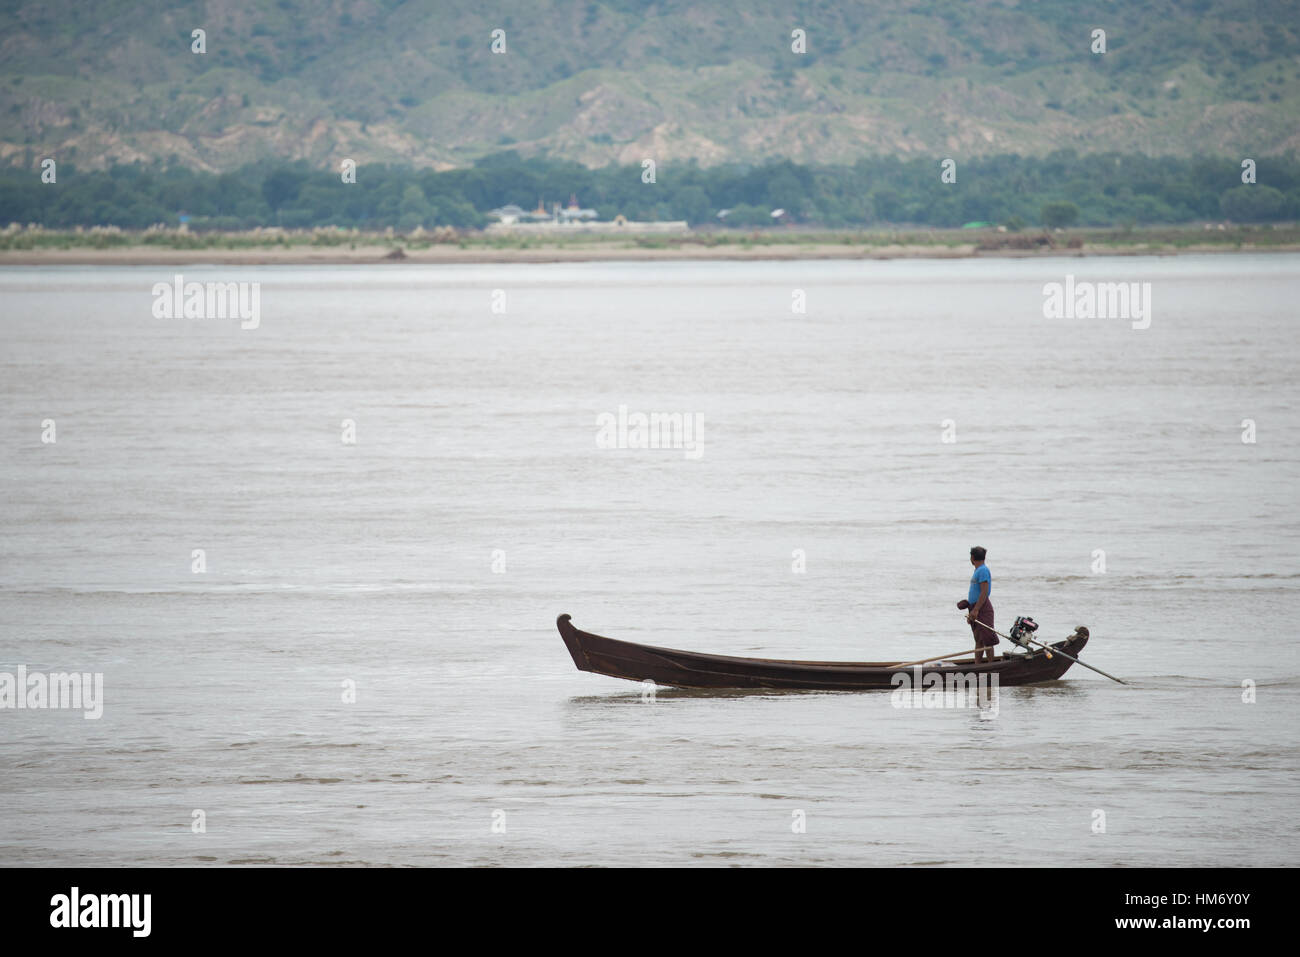 BAGAN, Myanmar (Birmanie) - La rivière Ayeyarwaddy (ou la rivière Irrawaddy) est le plus grand fleuve au Myanmar. L'exécution du nord au sud à travers le pays qu'il sert comme une voie de transport et une importante voie commerciale. Banque D'Images